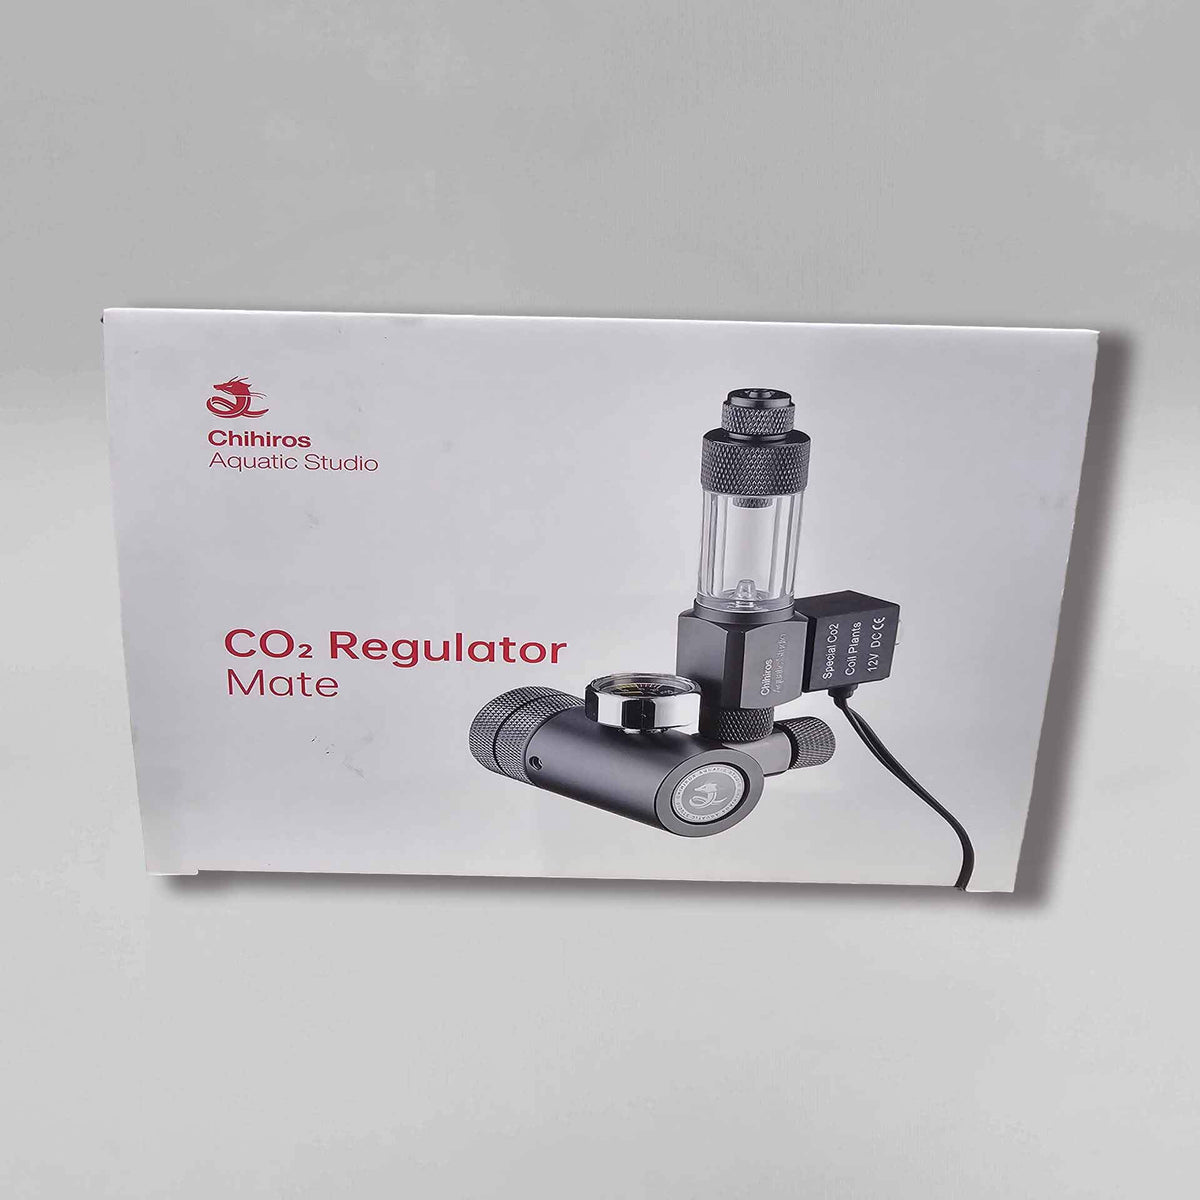 Chihiros CO2 Regulator Mate - W21.8 X 14